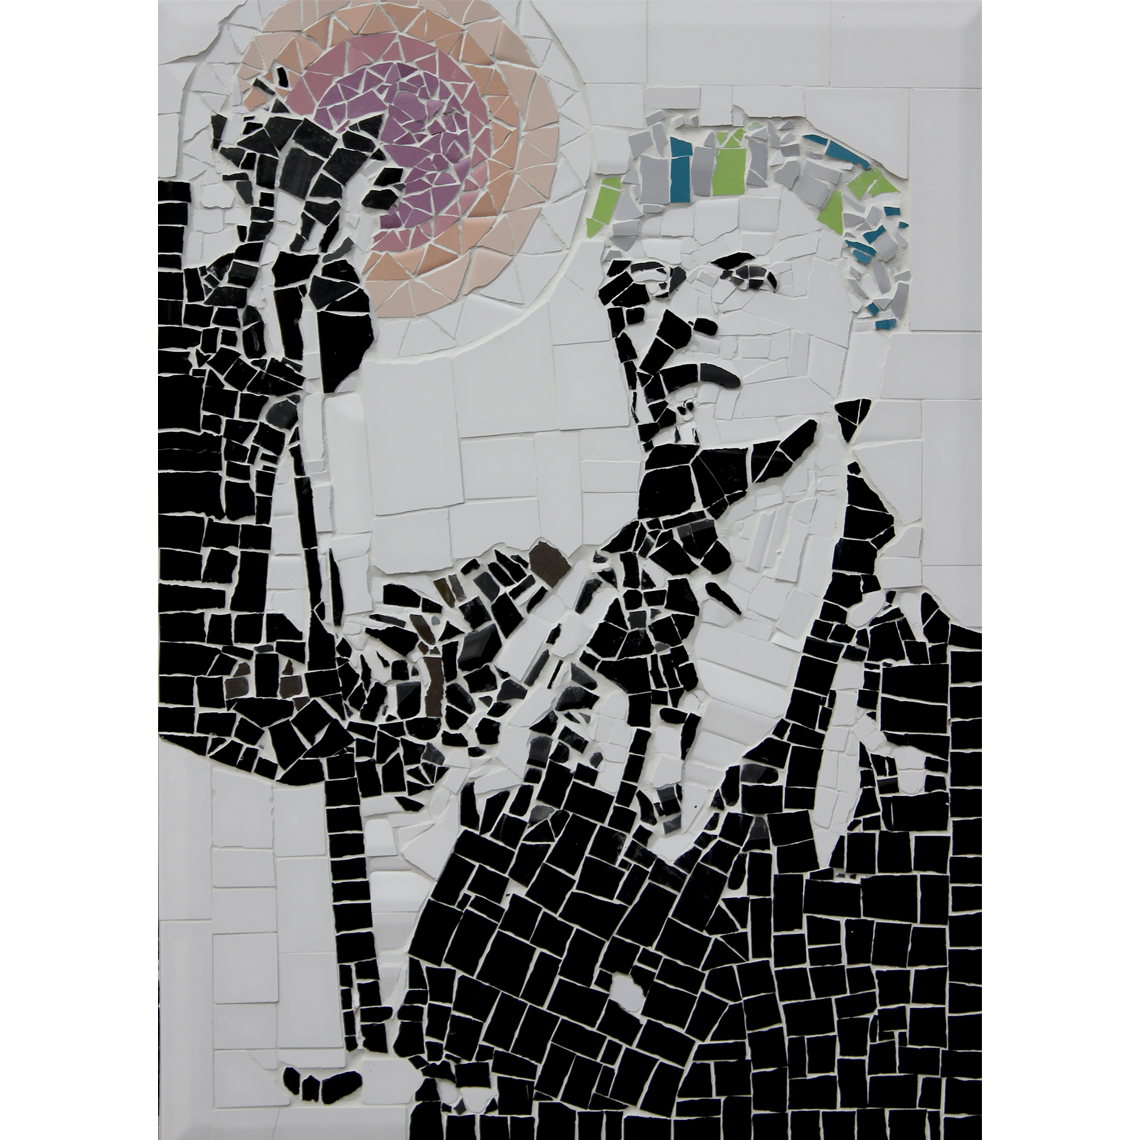 David Bowie mosaic by Elidyr Communities Trust